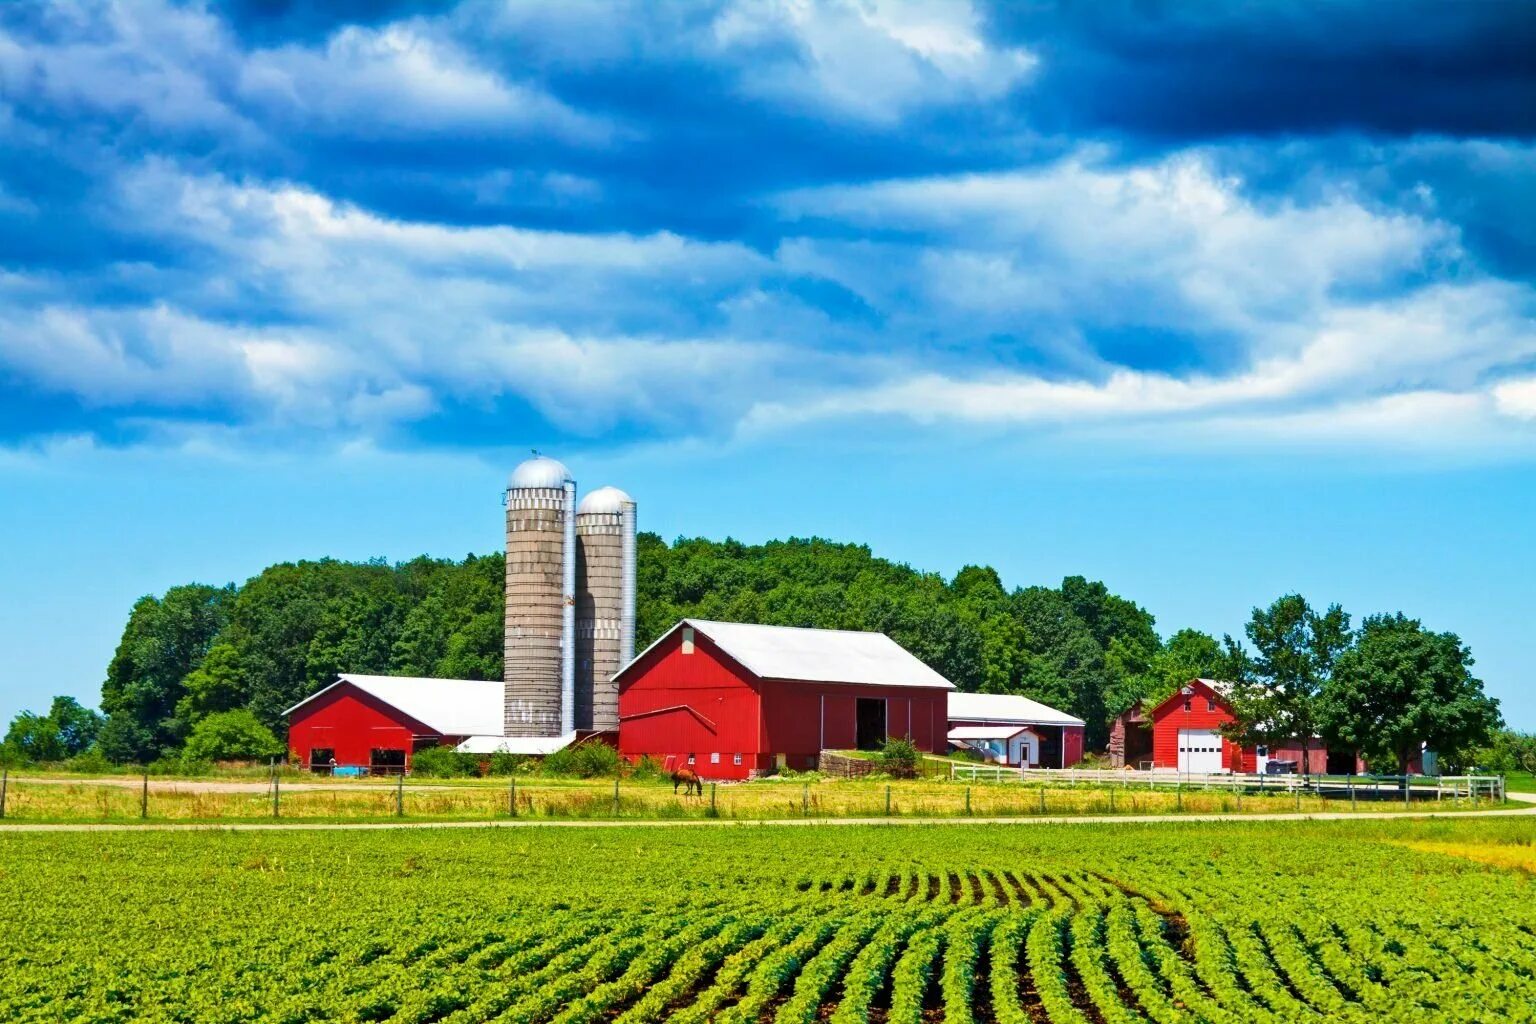 Цветное хозяйство. Фермерские хозяйства Германии поля. Сельскохозяйственная ферма США. Фермерское хозяйство в Северной Америке. Фермерский Амбар в Германии.